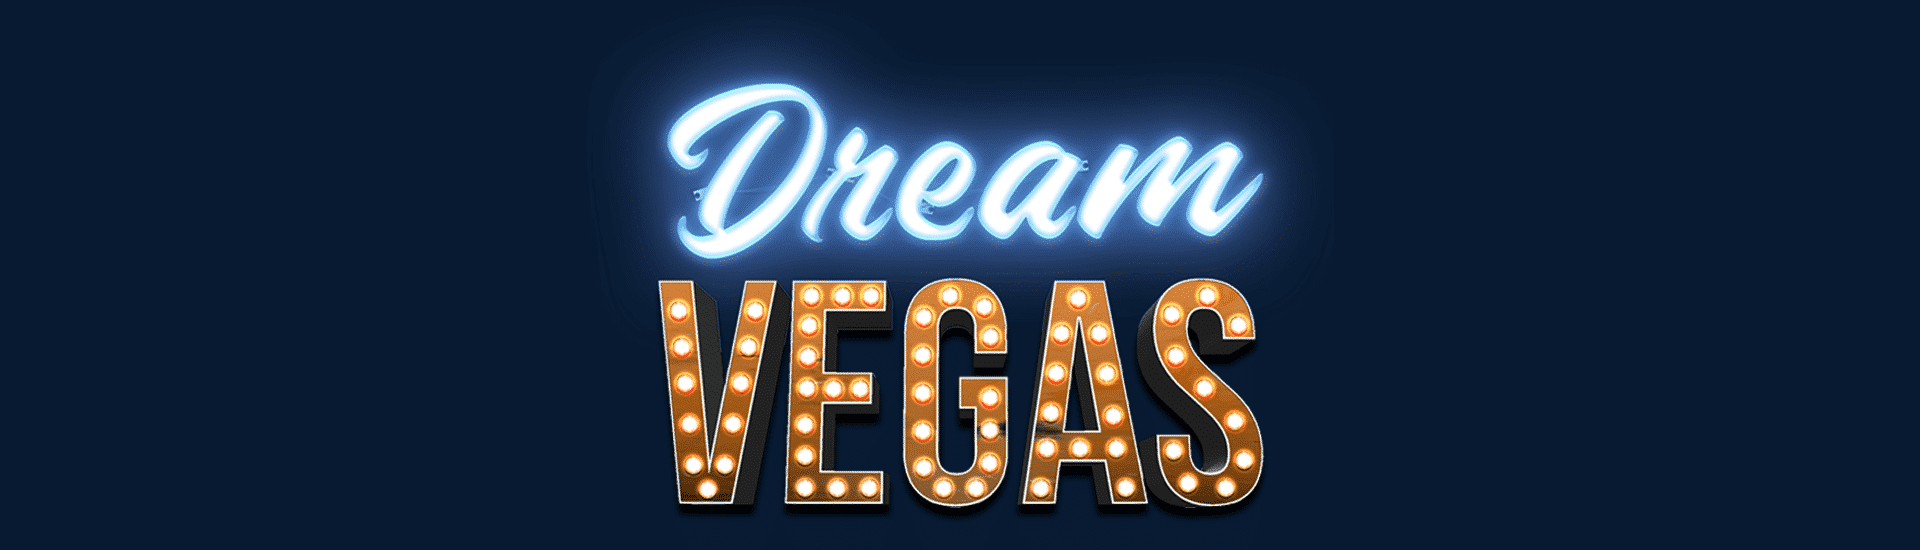 Dream Vegas Featured Image